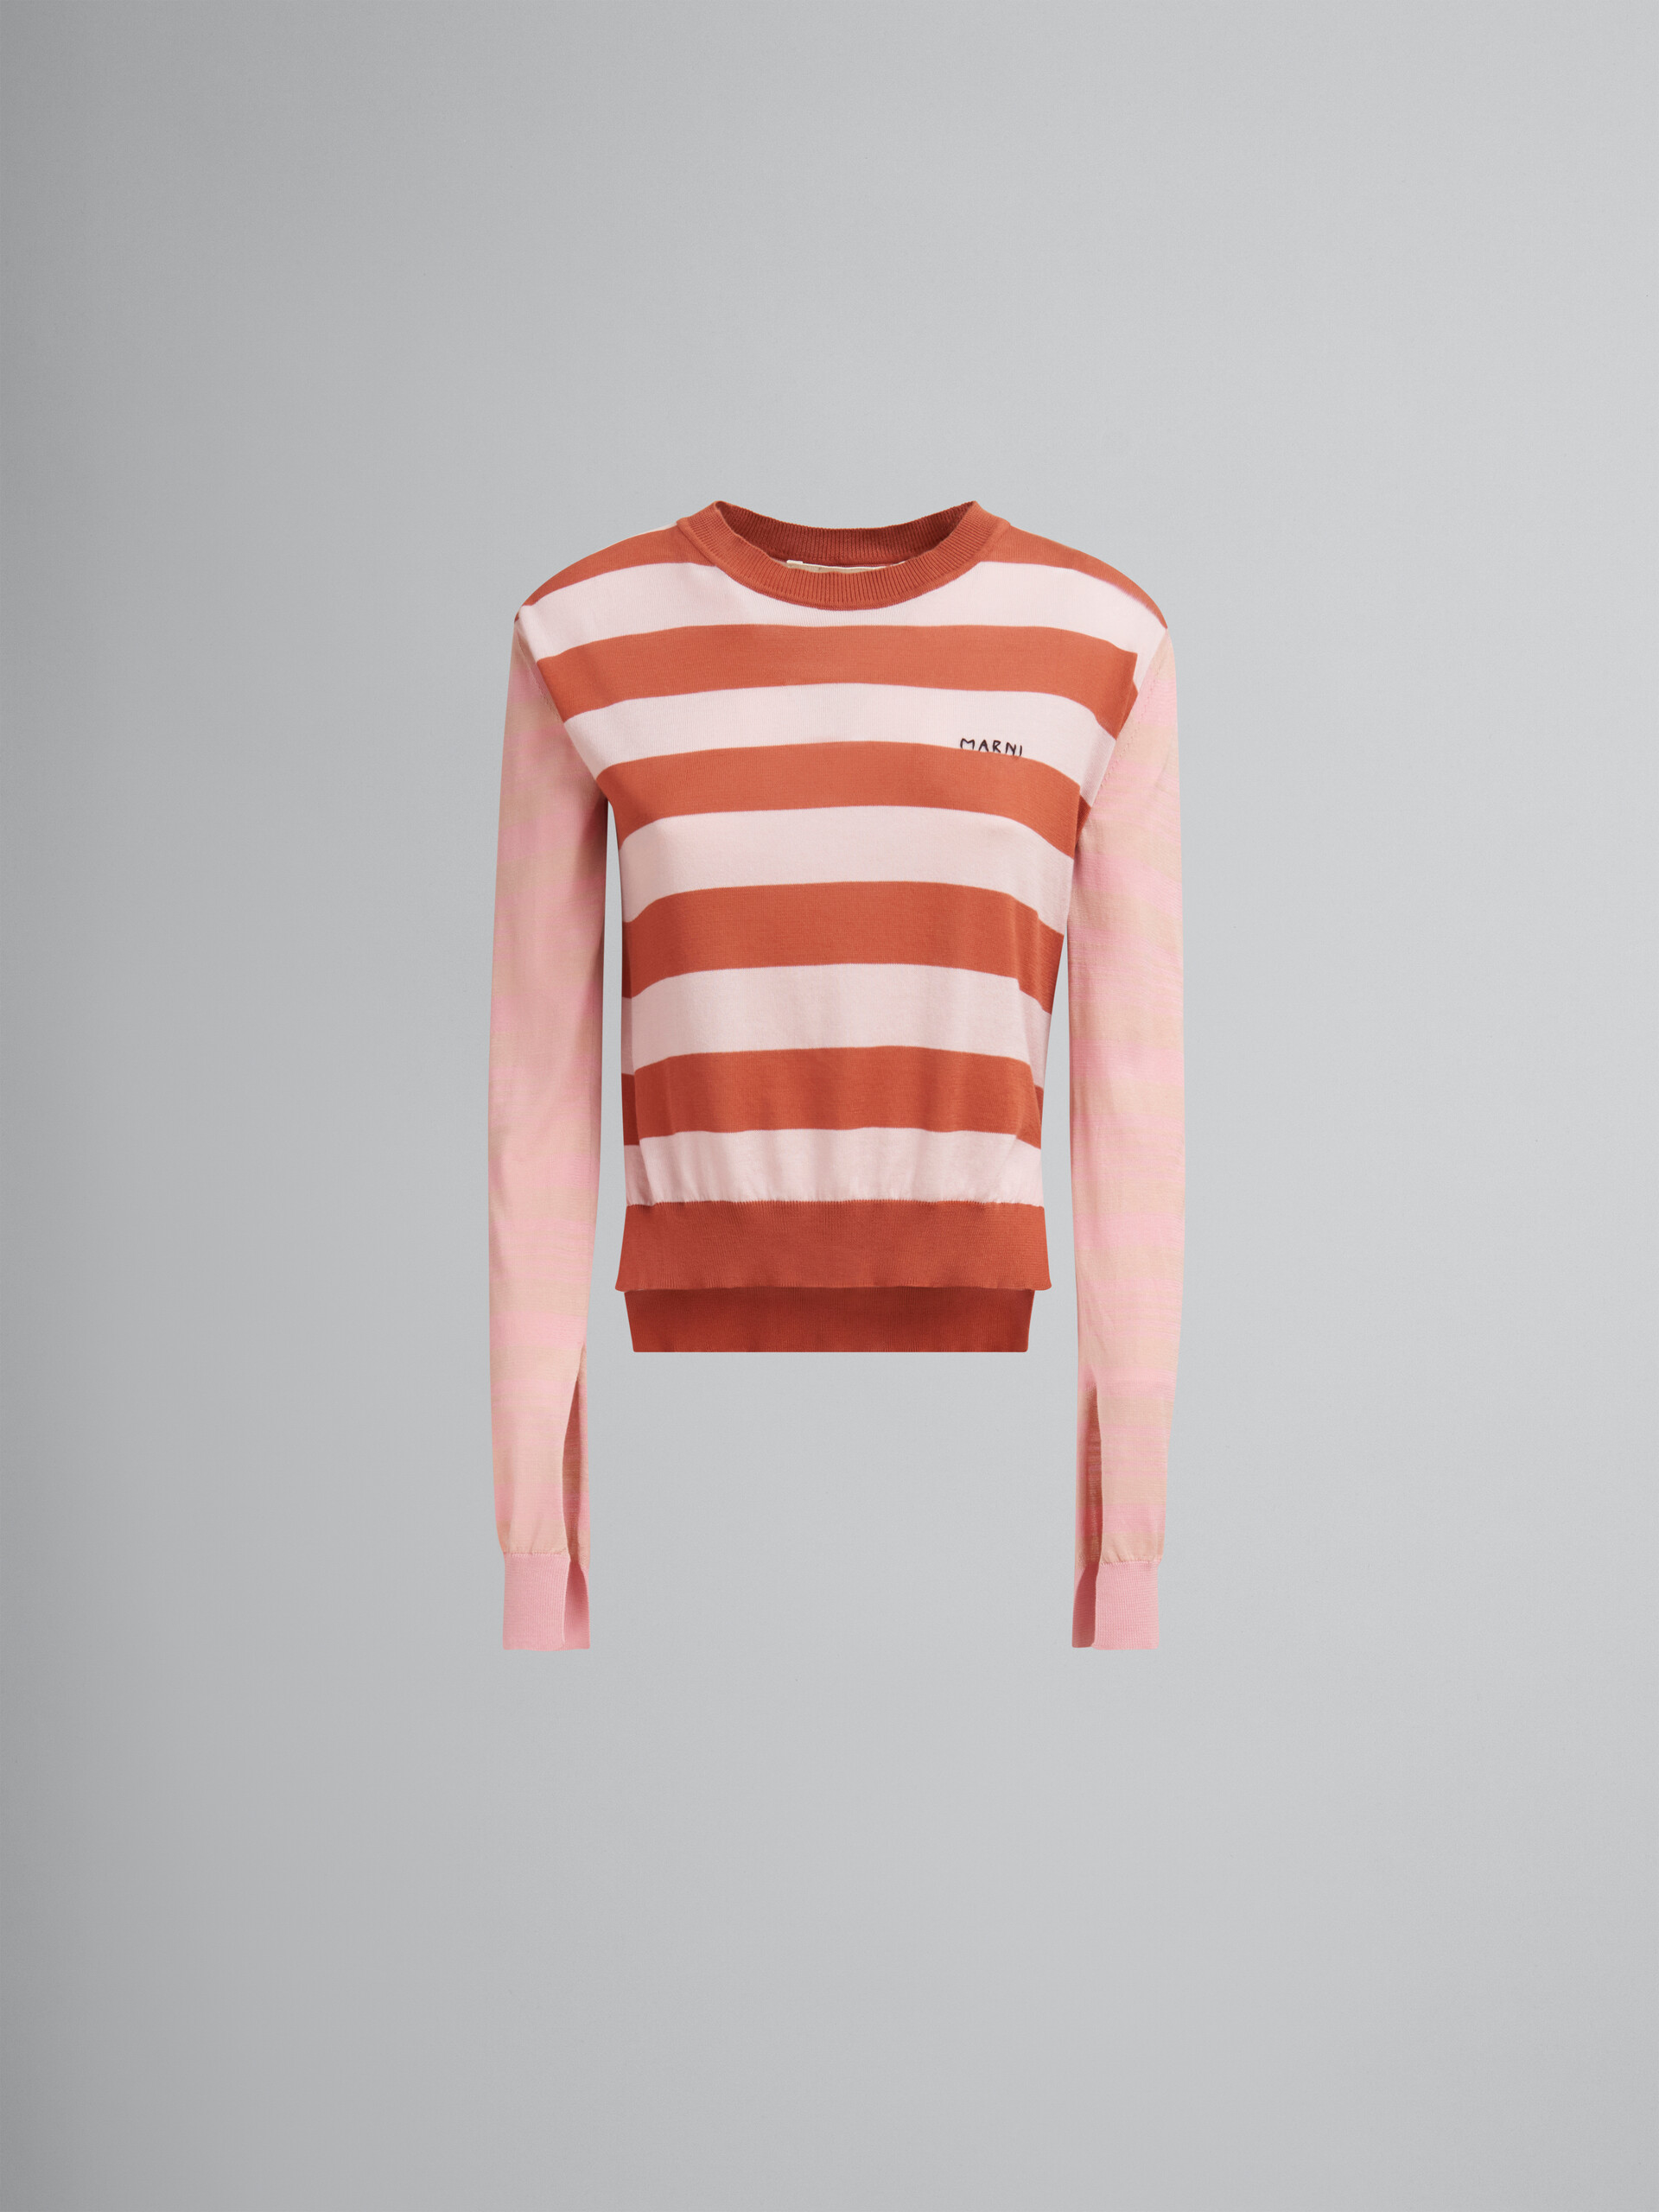 Camiseta con cuello redondo rosa de algodón ligero con rayas en contraste - jerseys - Image 1